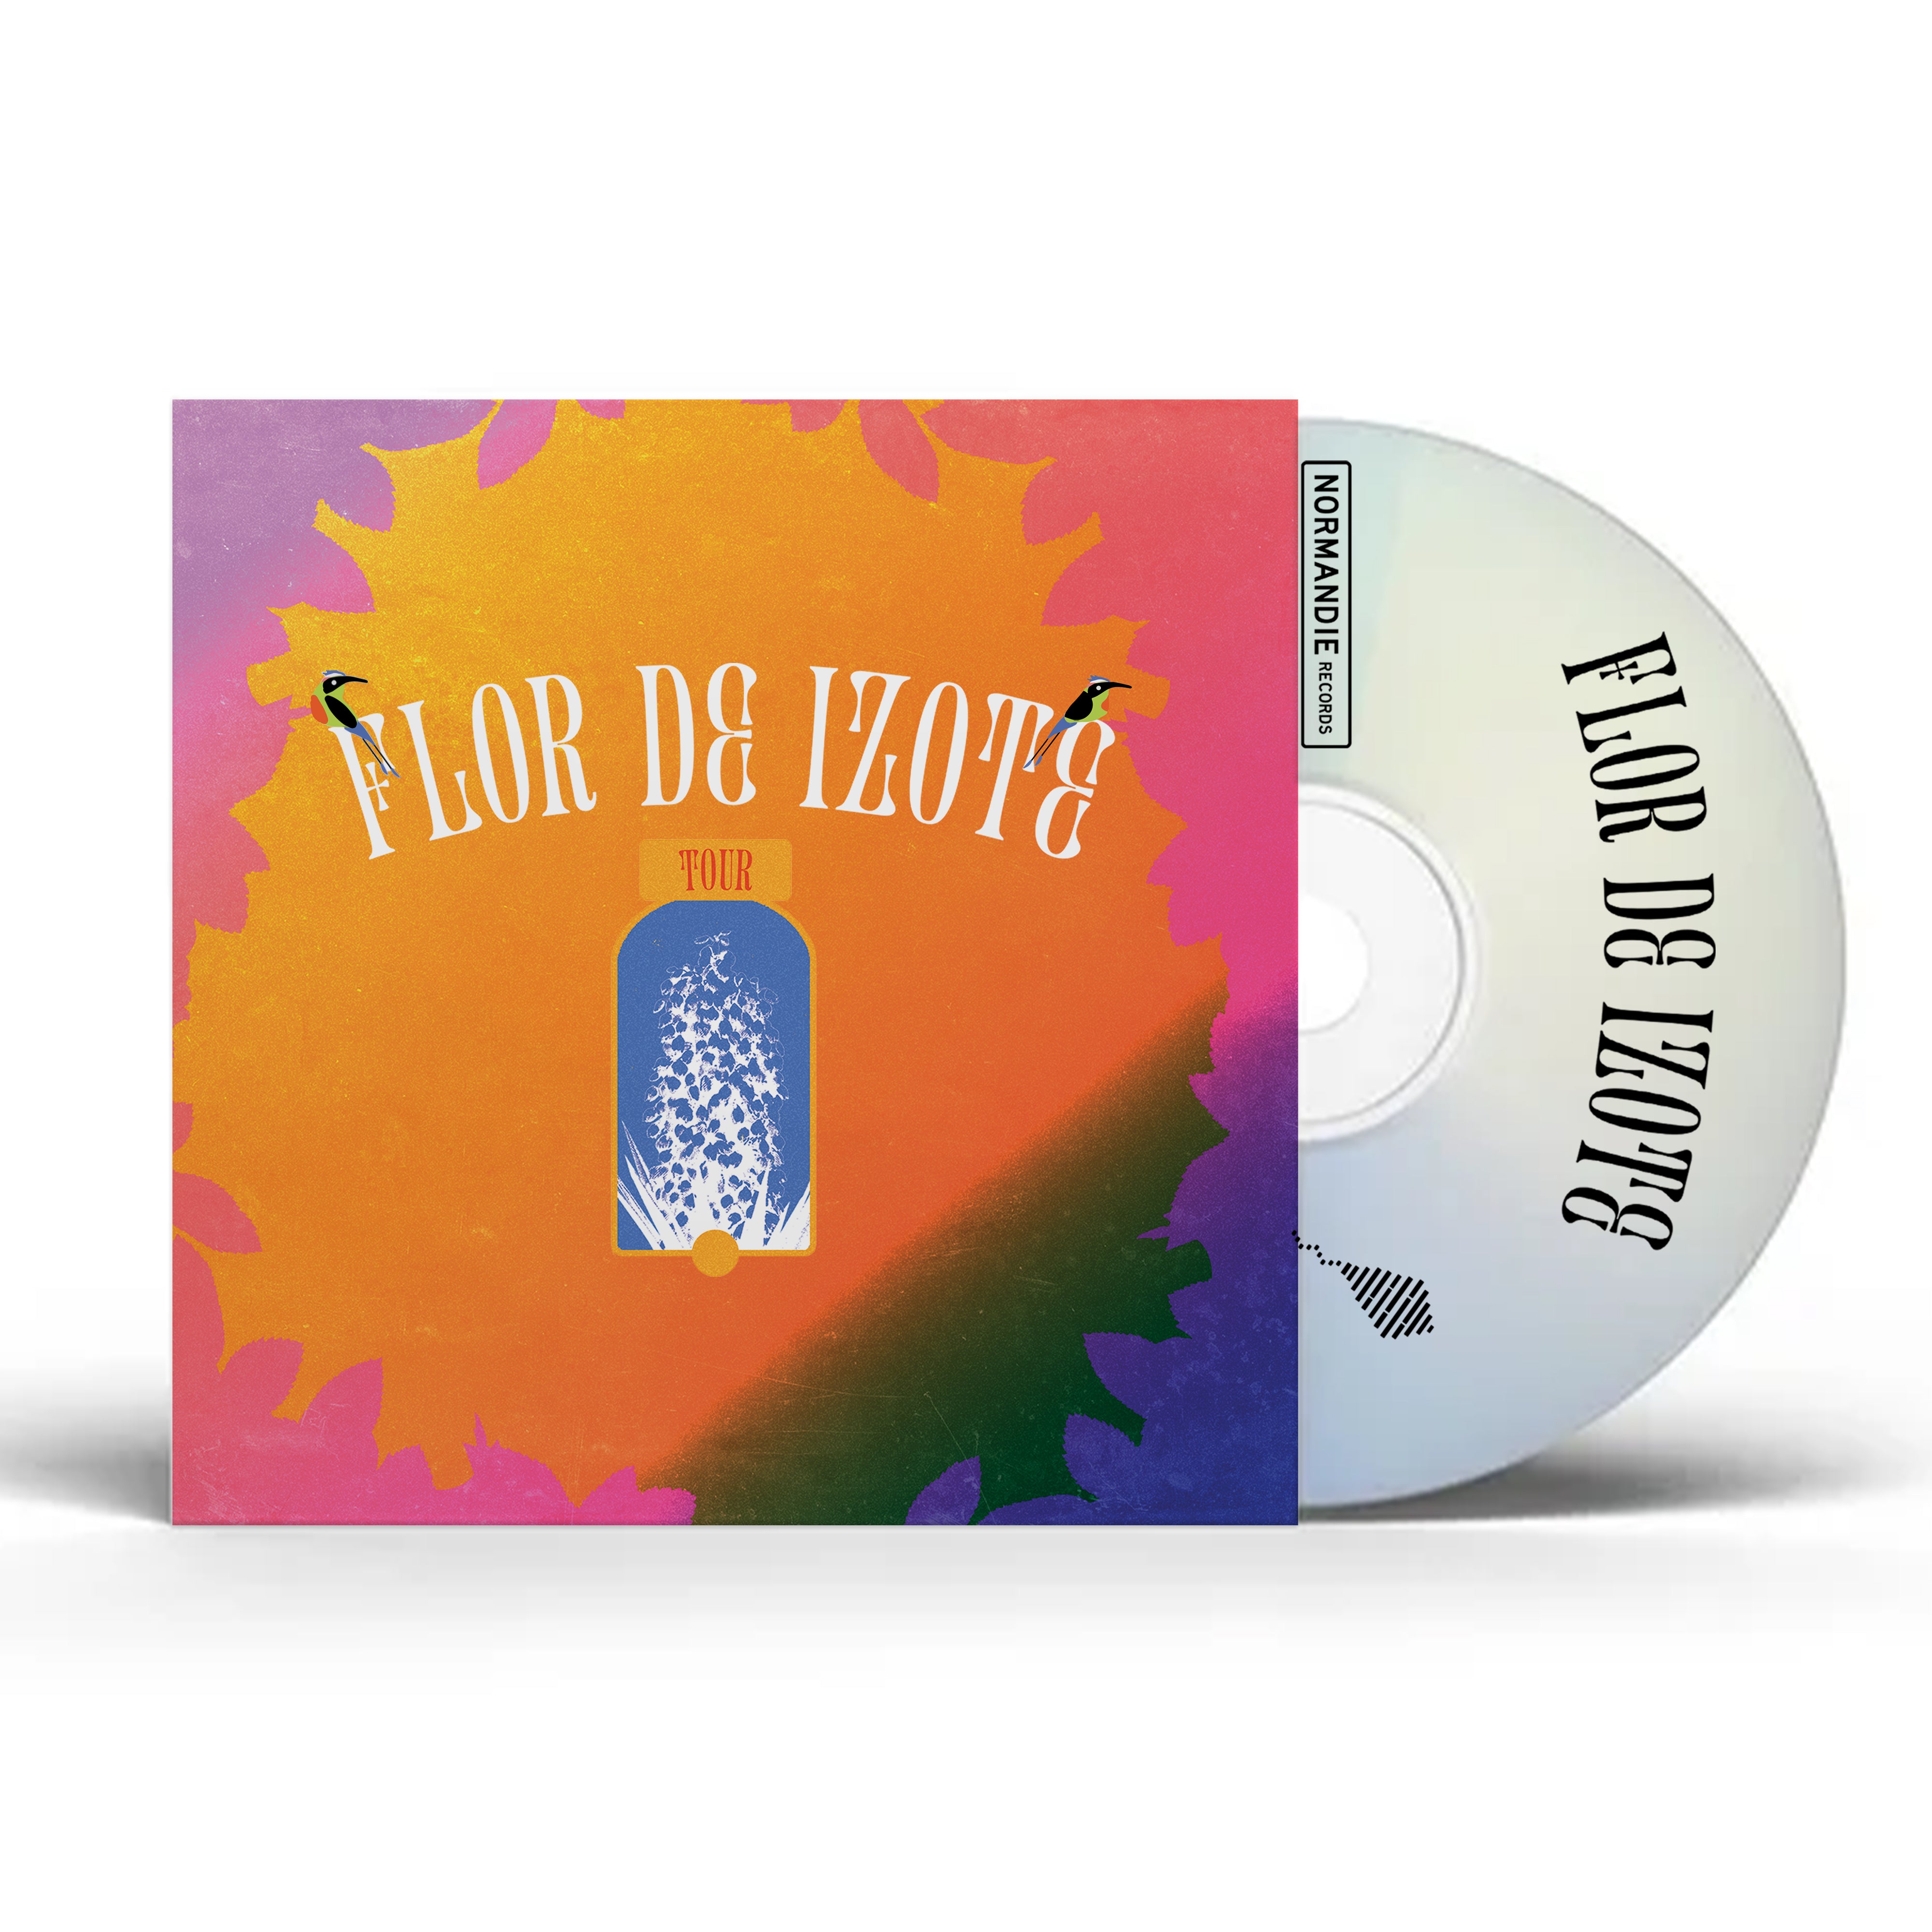 Flor De Izote Volume 1 (Tour Compilation CD)